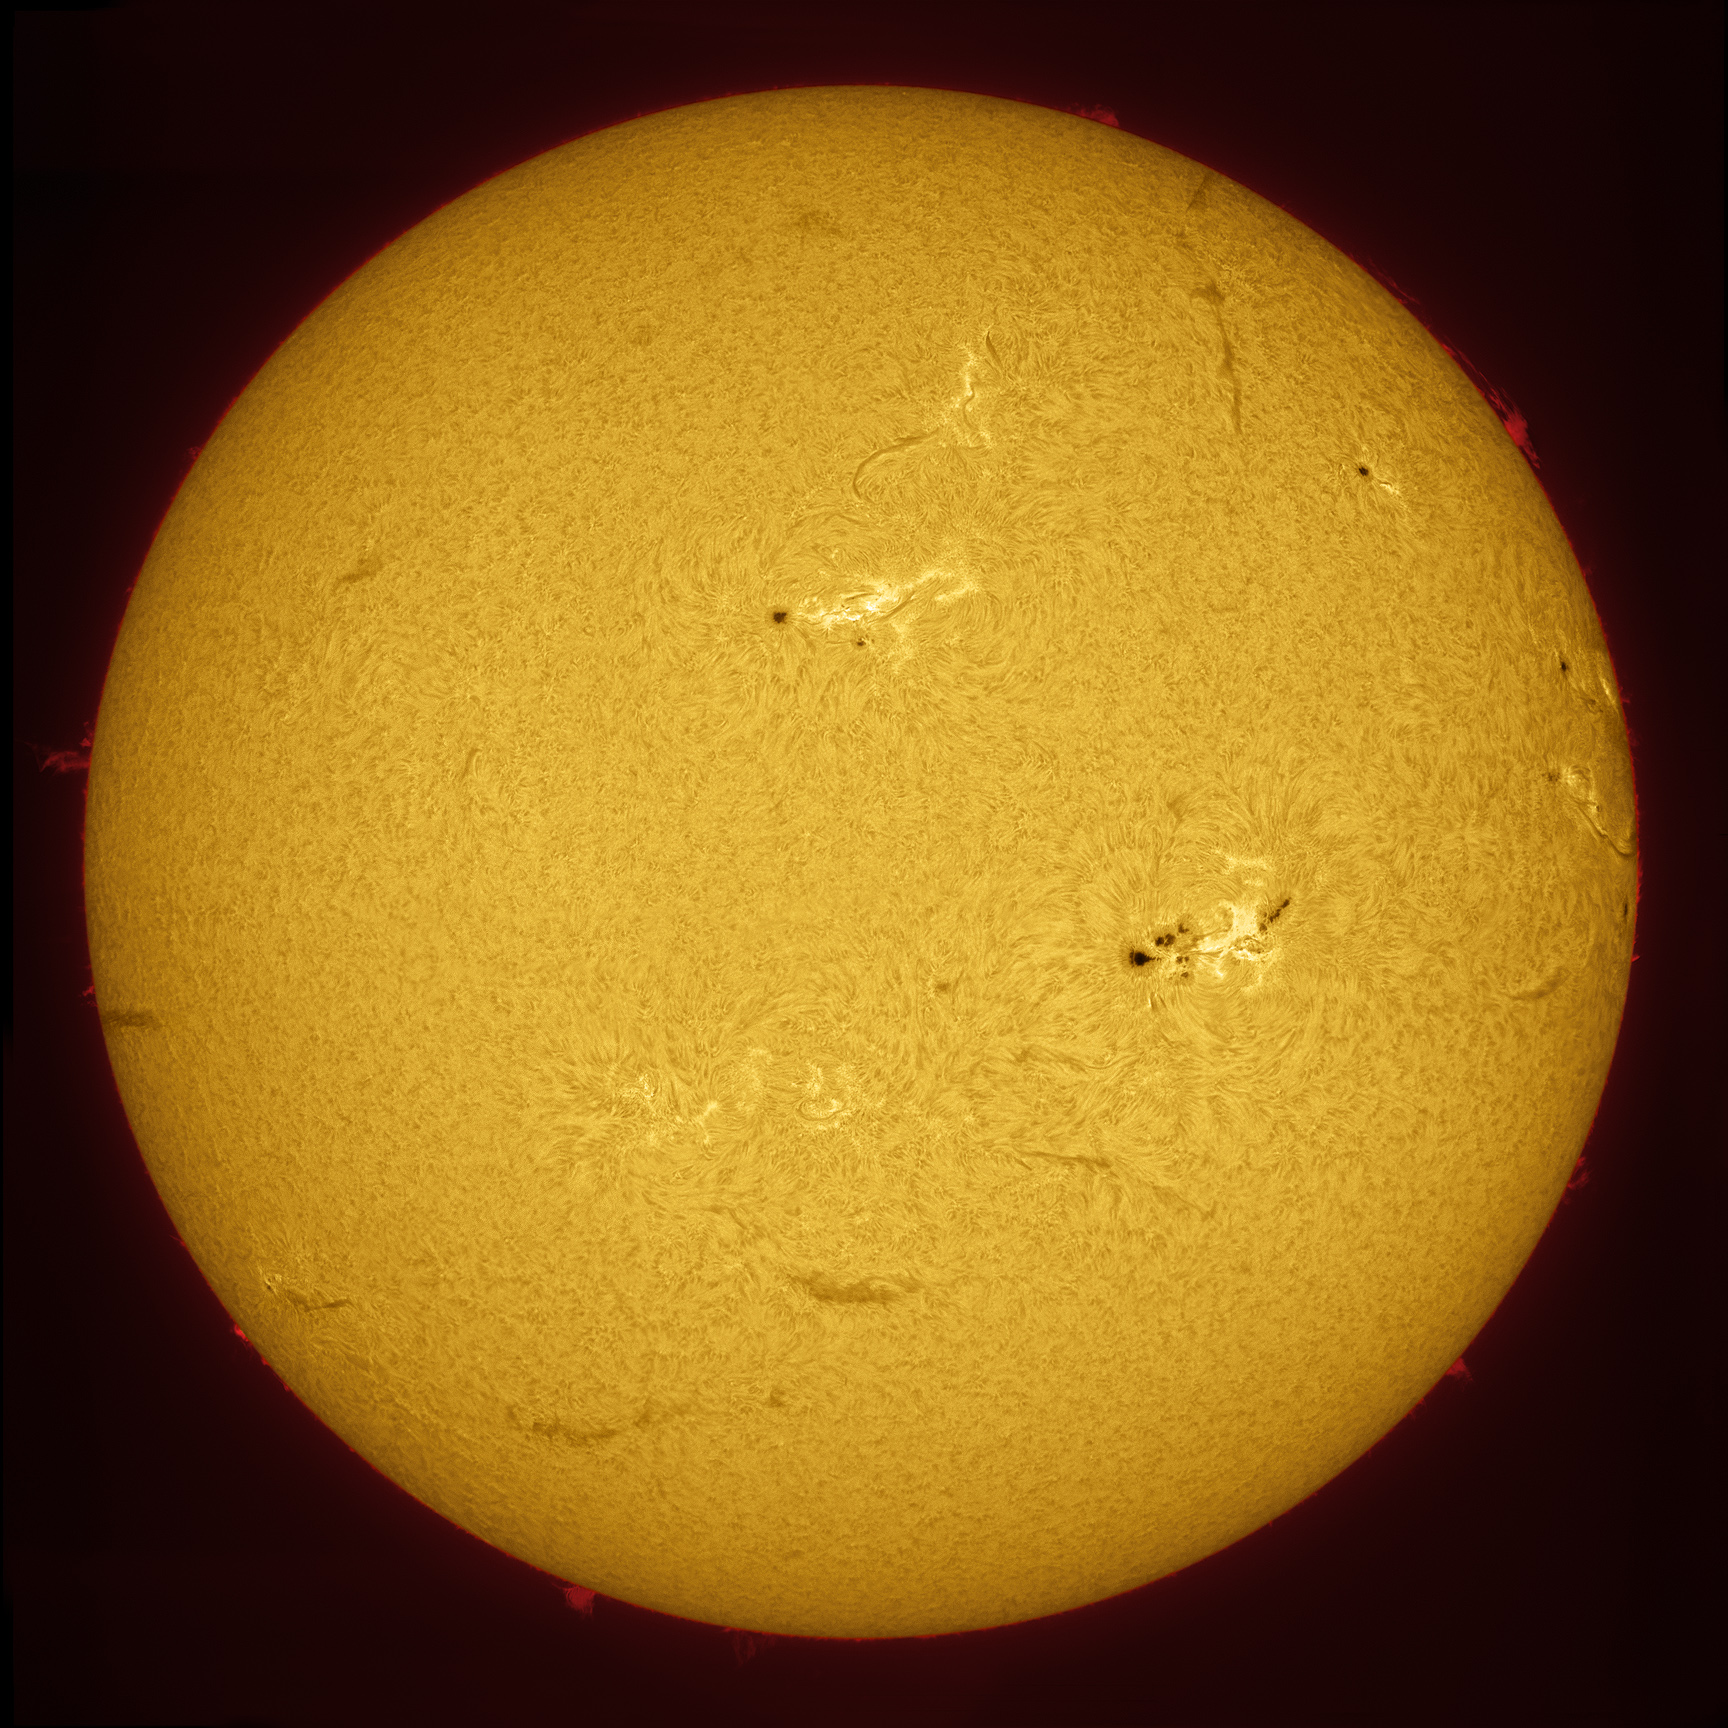 Saulės dėmė AR1339 matoma šiek tiek dešiniau nuo centro